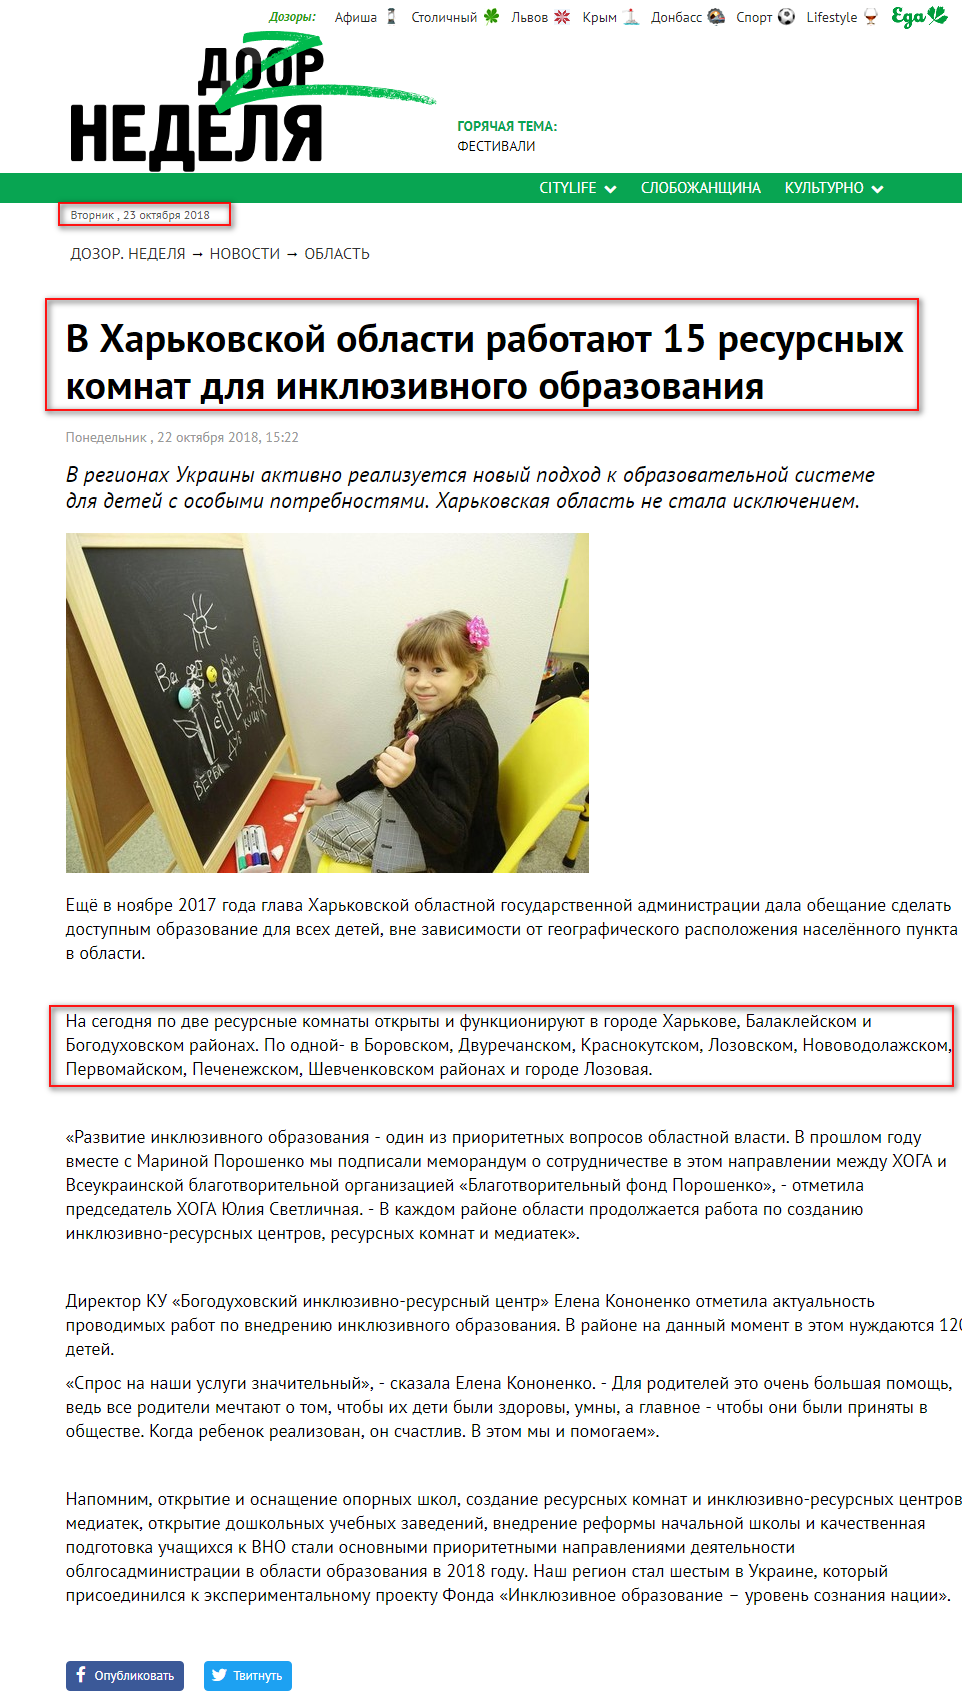 https://dozor.com.ua/news/region/1212875.html